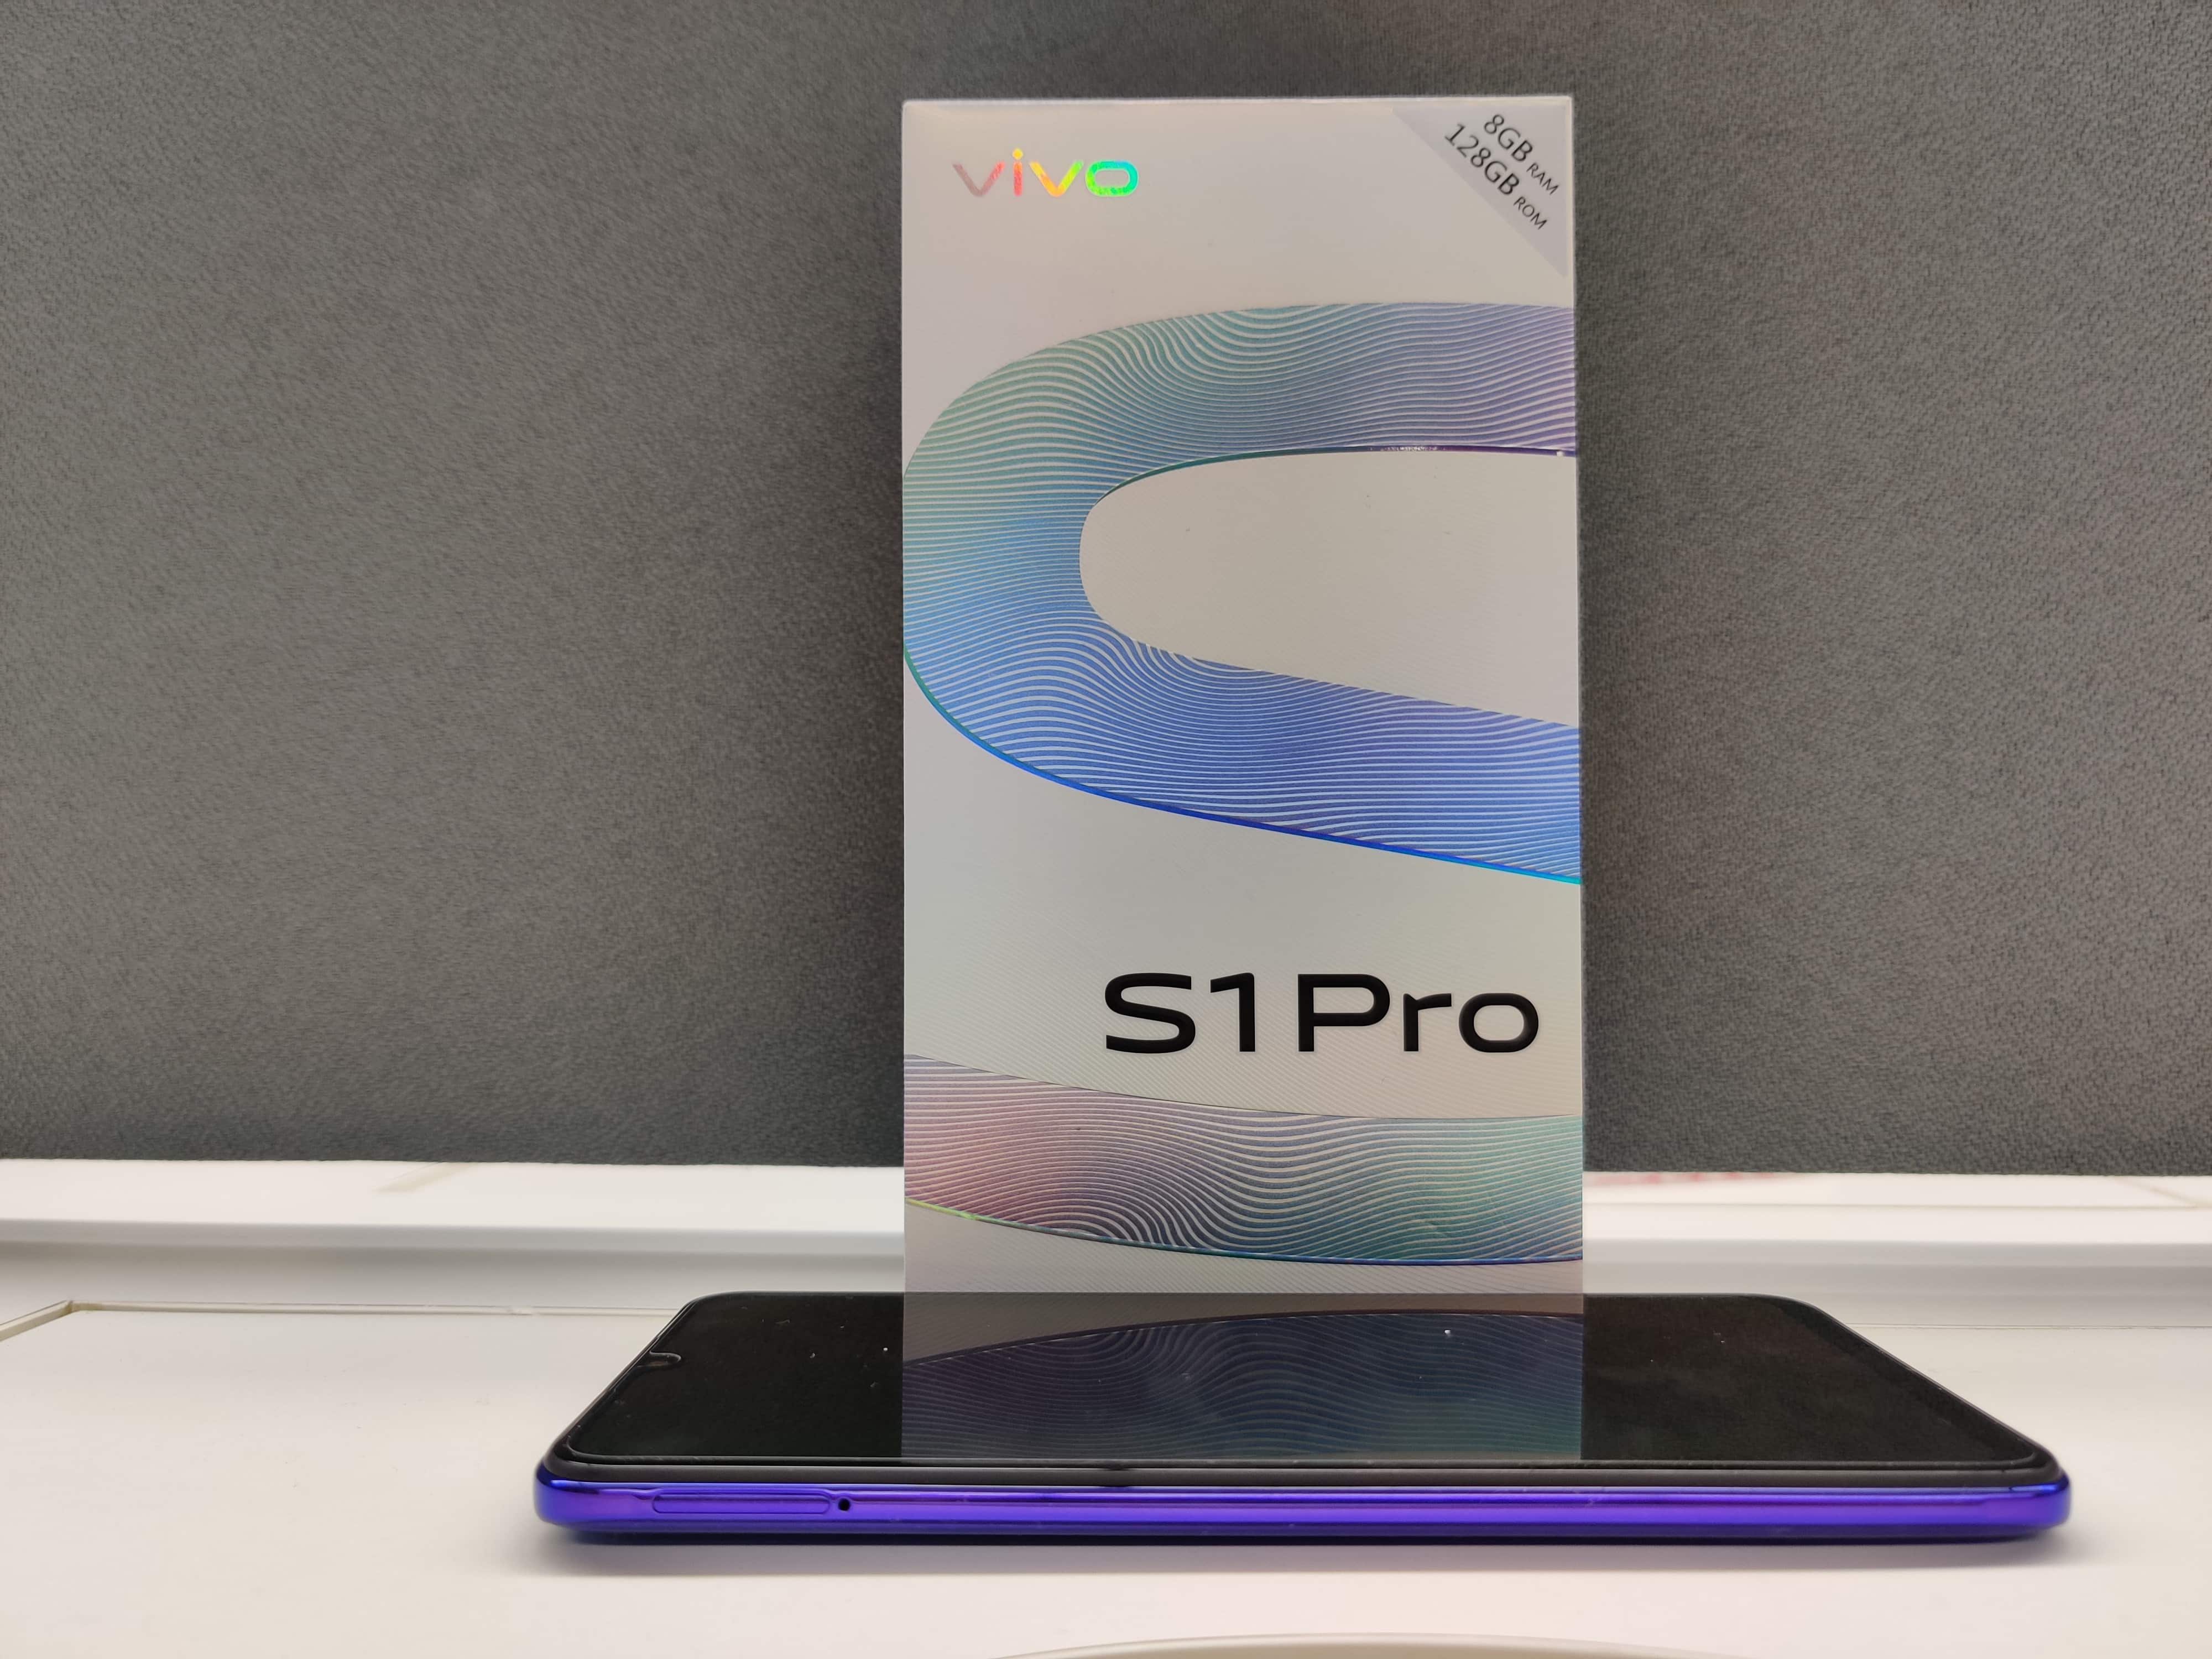  Vivo S1 Pro features